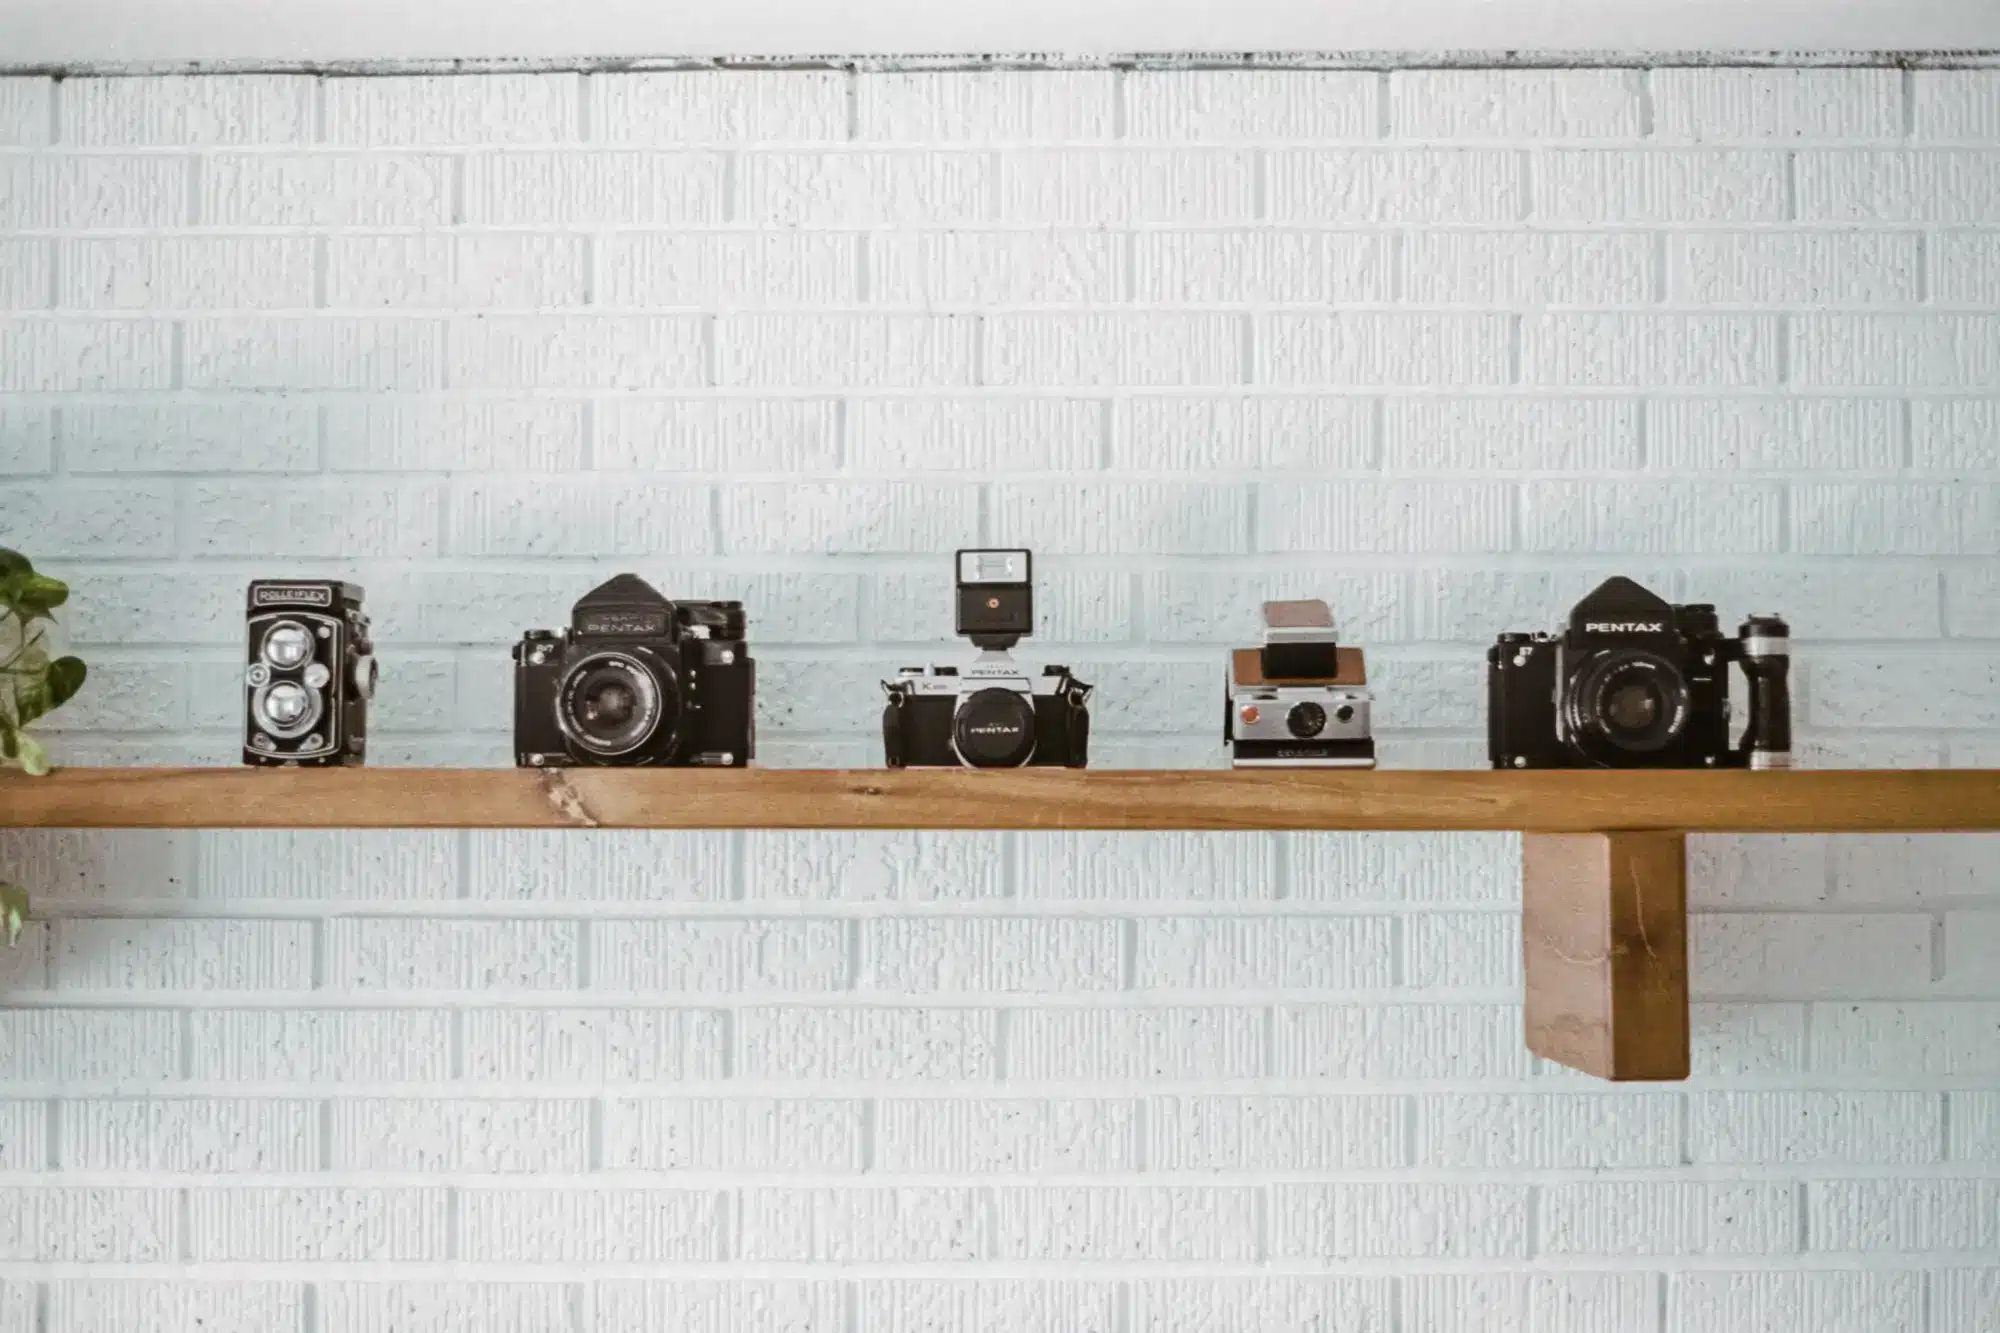 A display of vintage cameras.